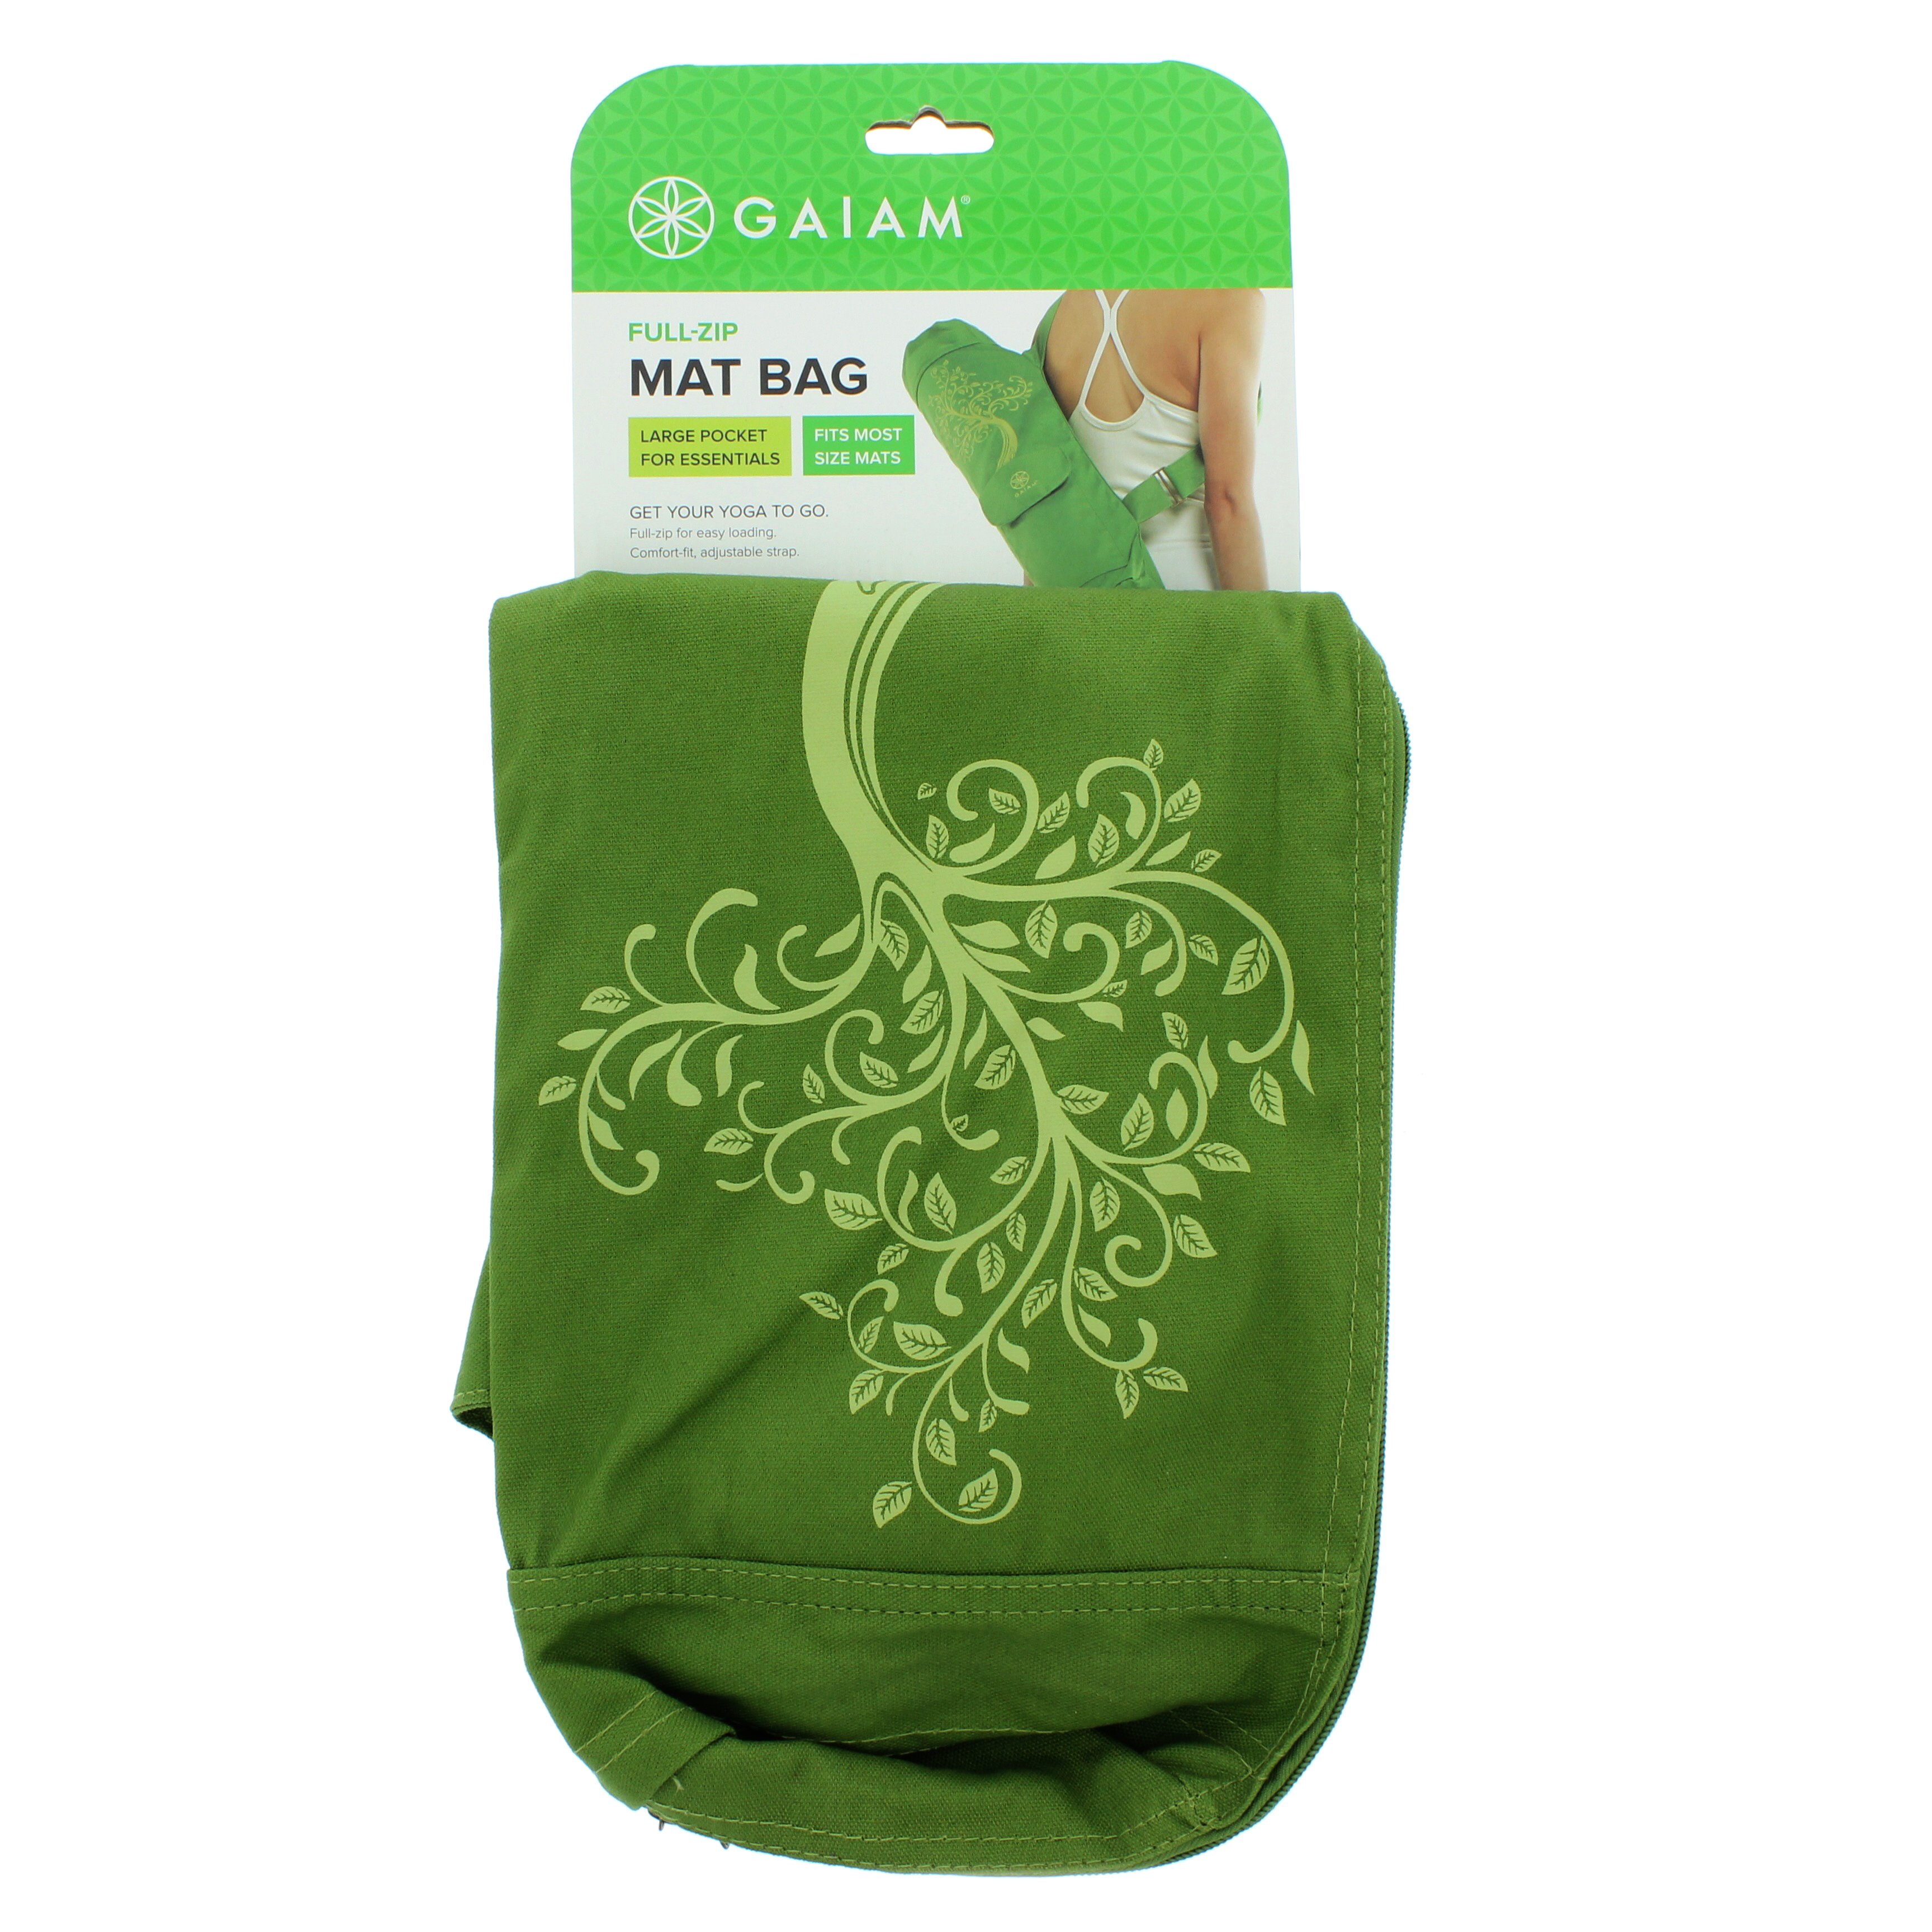 Gaiam Tree of Wisdom Cargo Mat Bag - Shop Fitness & Sporting Goods at H-E-B